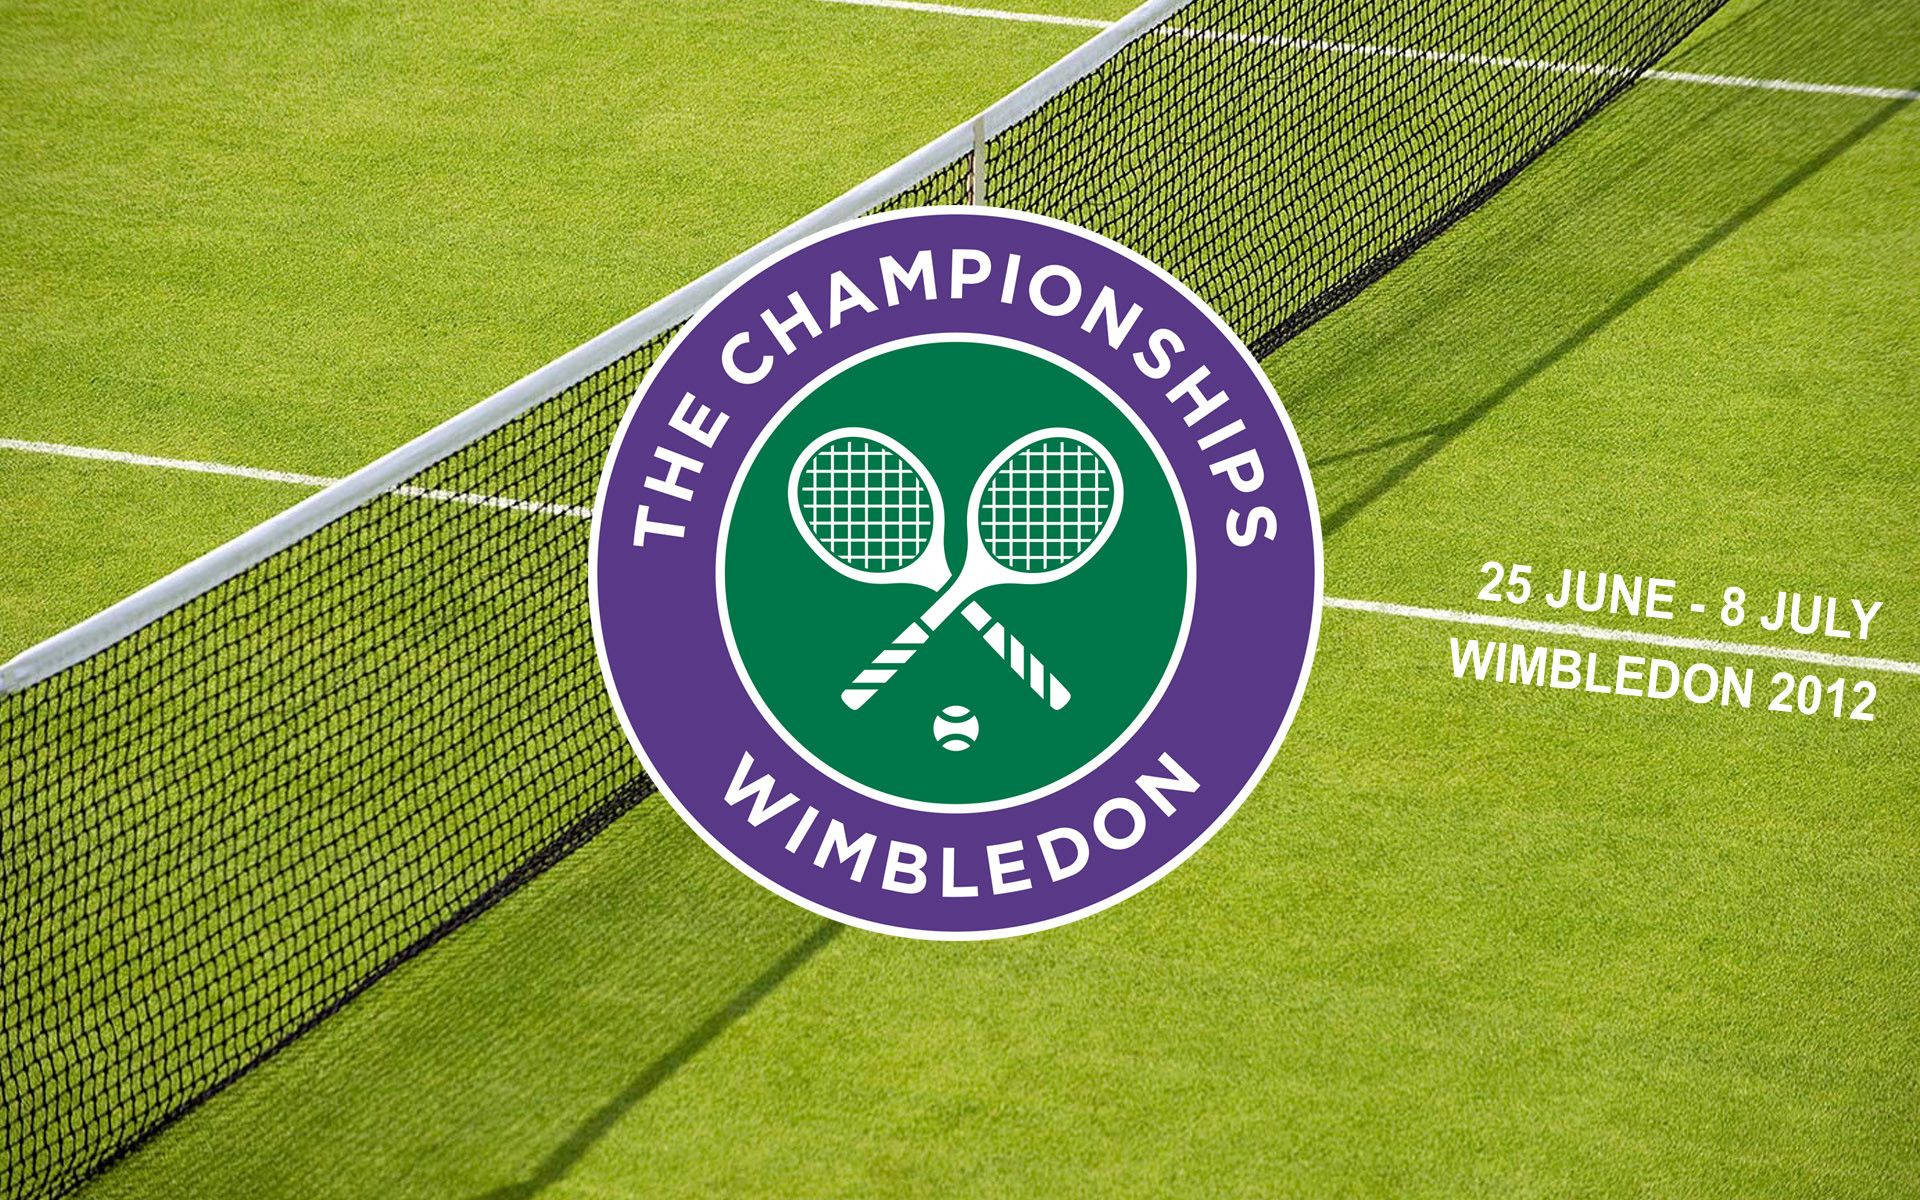 Wimbledon Logo In Grass Background